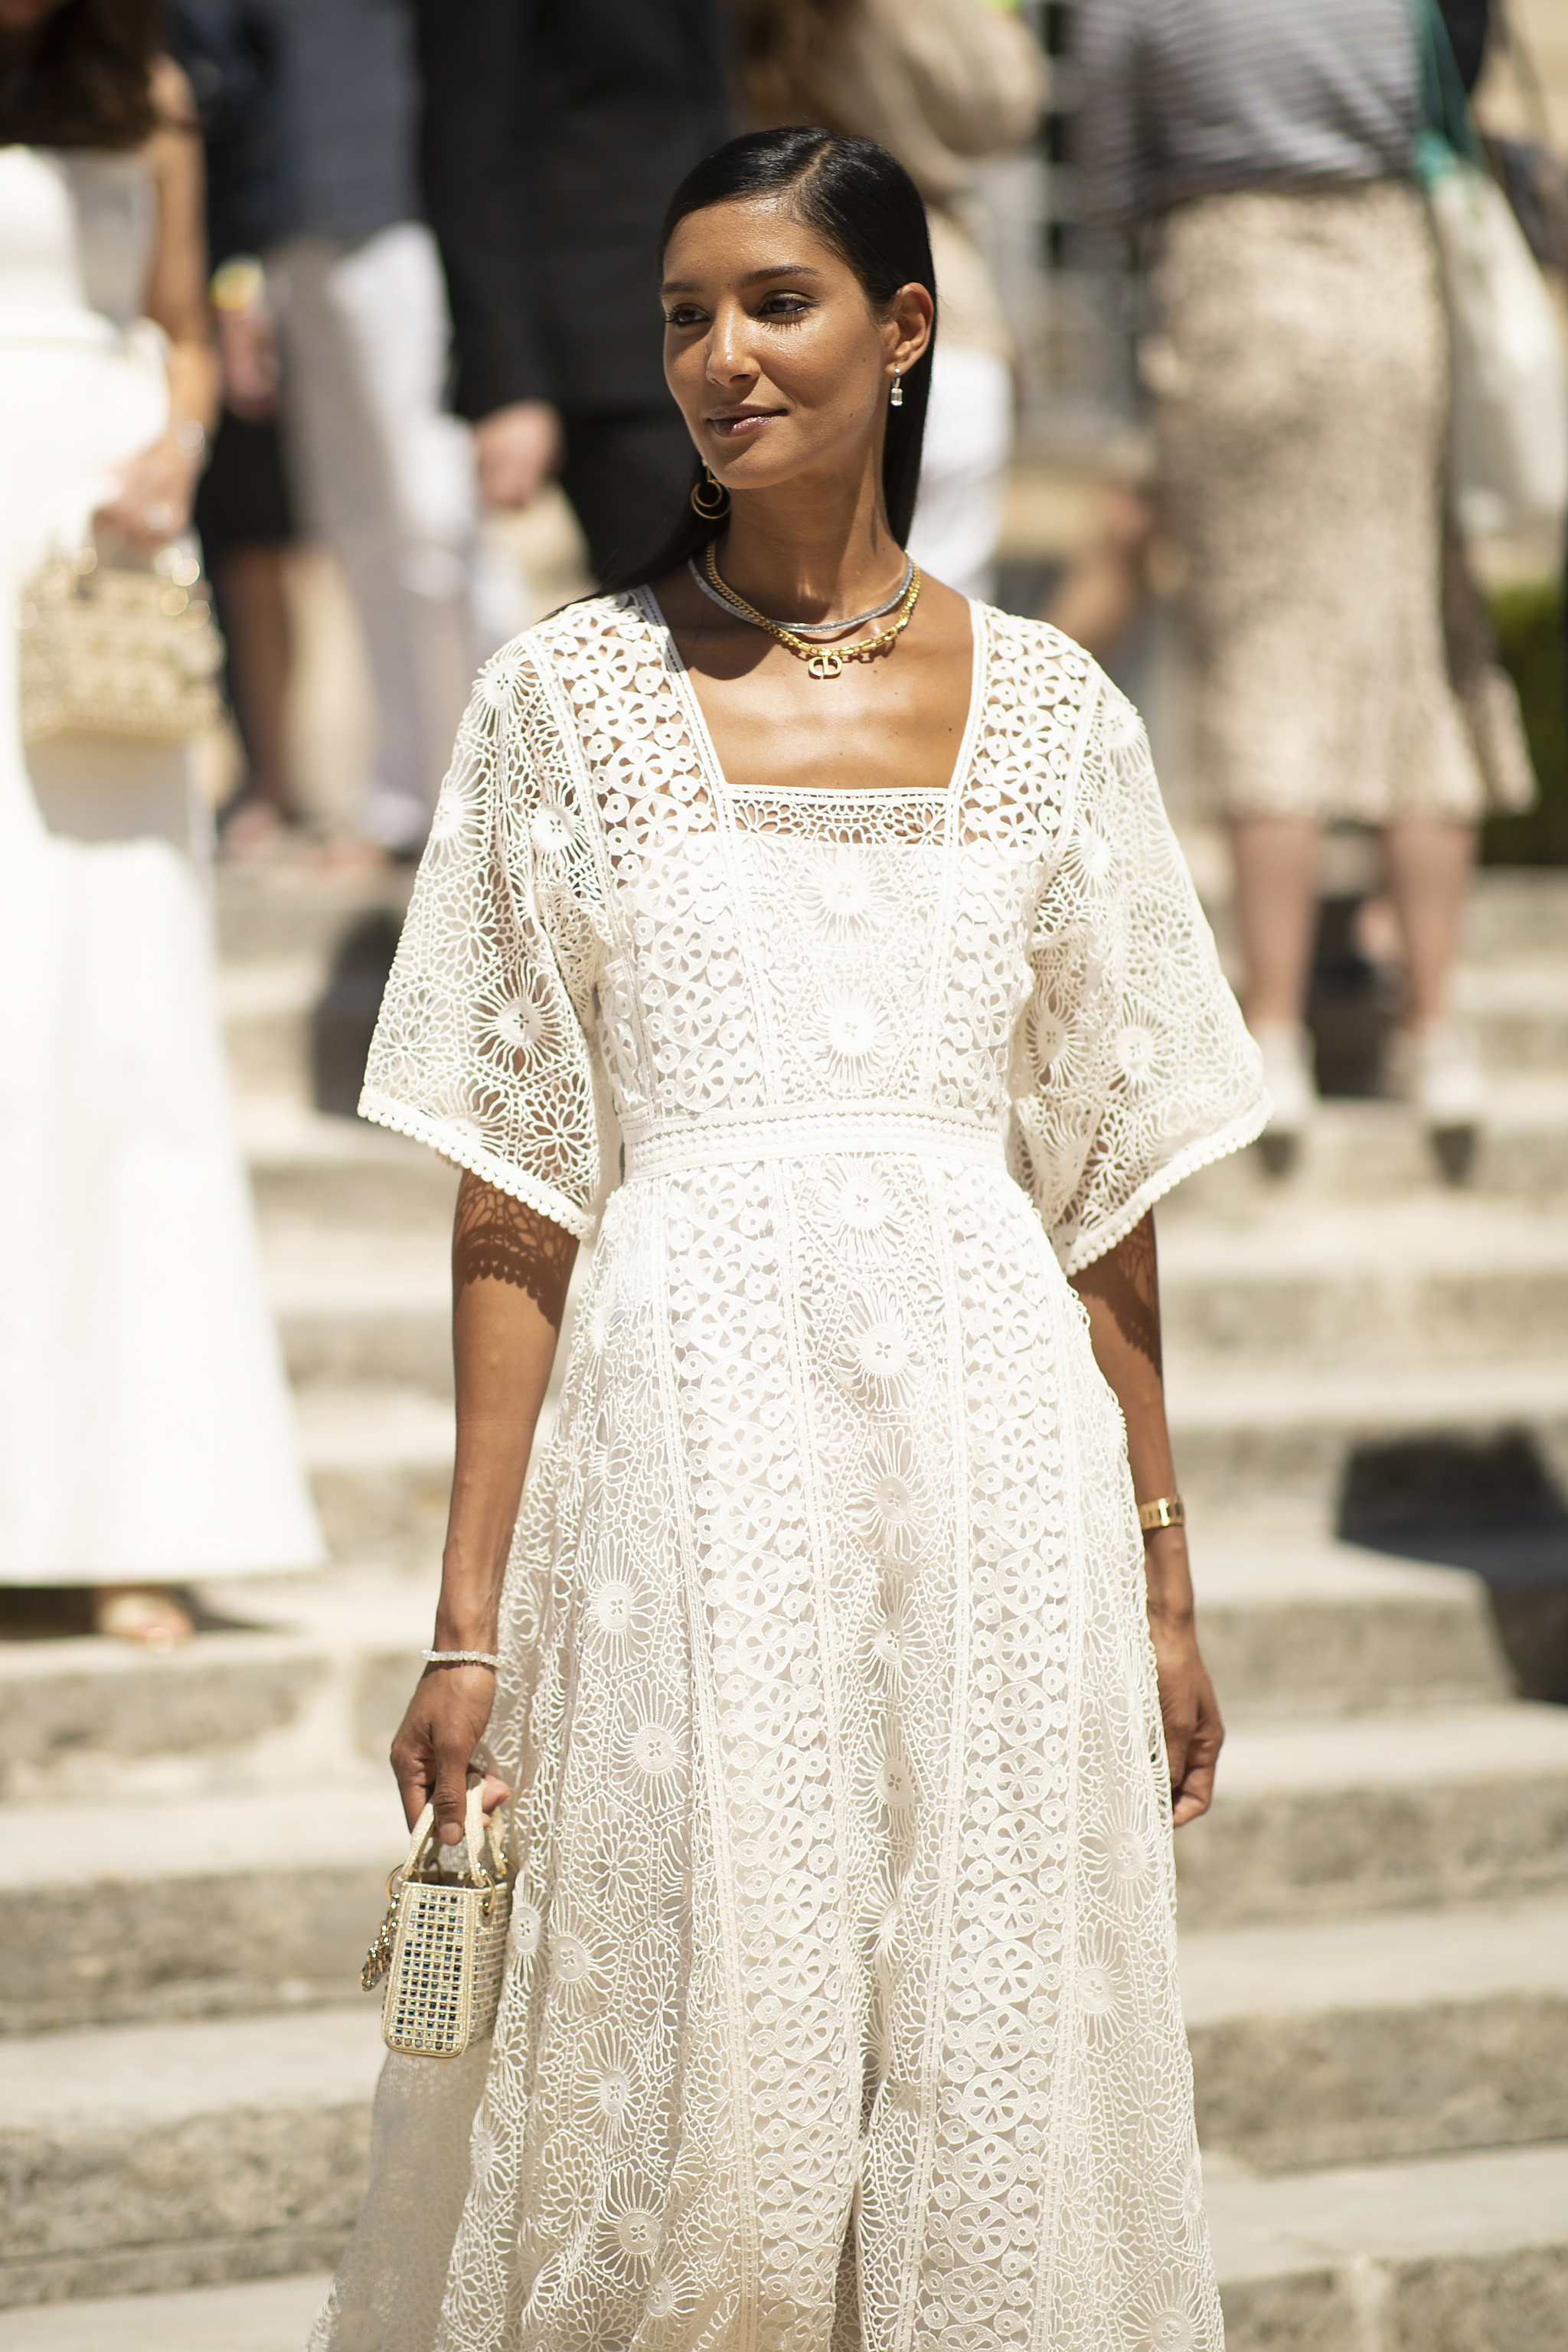 Una invitada a los desfiles de París con un vestido blanco.